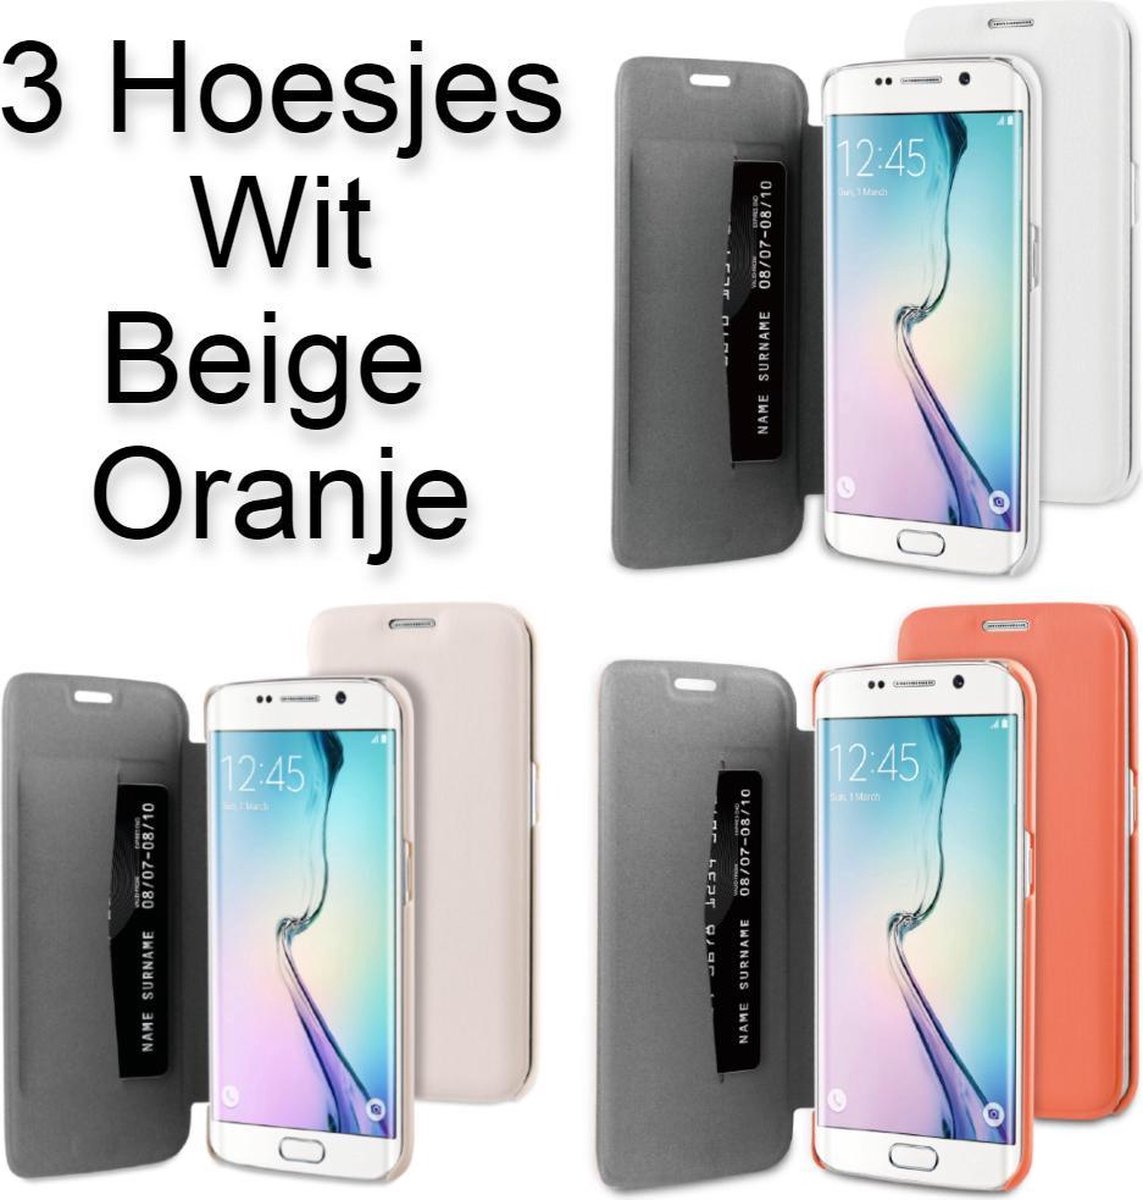 3 Hoesjes voor Samsung Galaxy S6 EDGE Portemonnee Hoesje met verschillende kleuren – Wit, Beige & Oranje - Book Case Wallet Boek Model Pasjeshouder Boekhoesje Kaarthouder